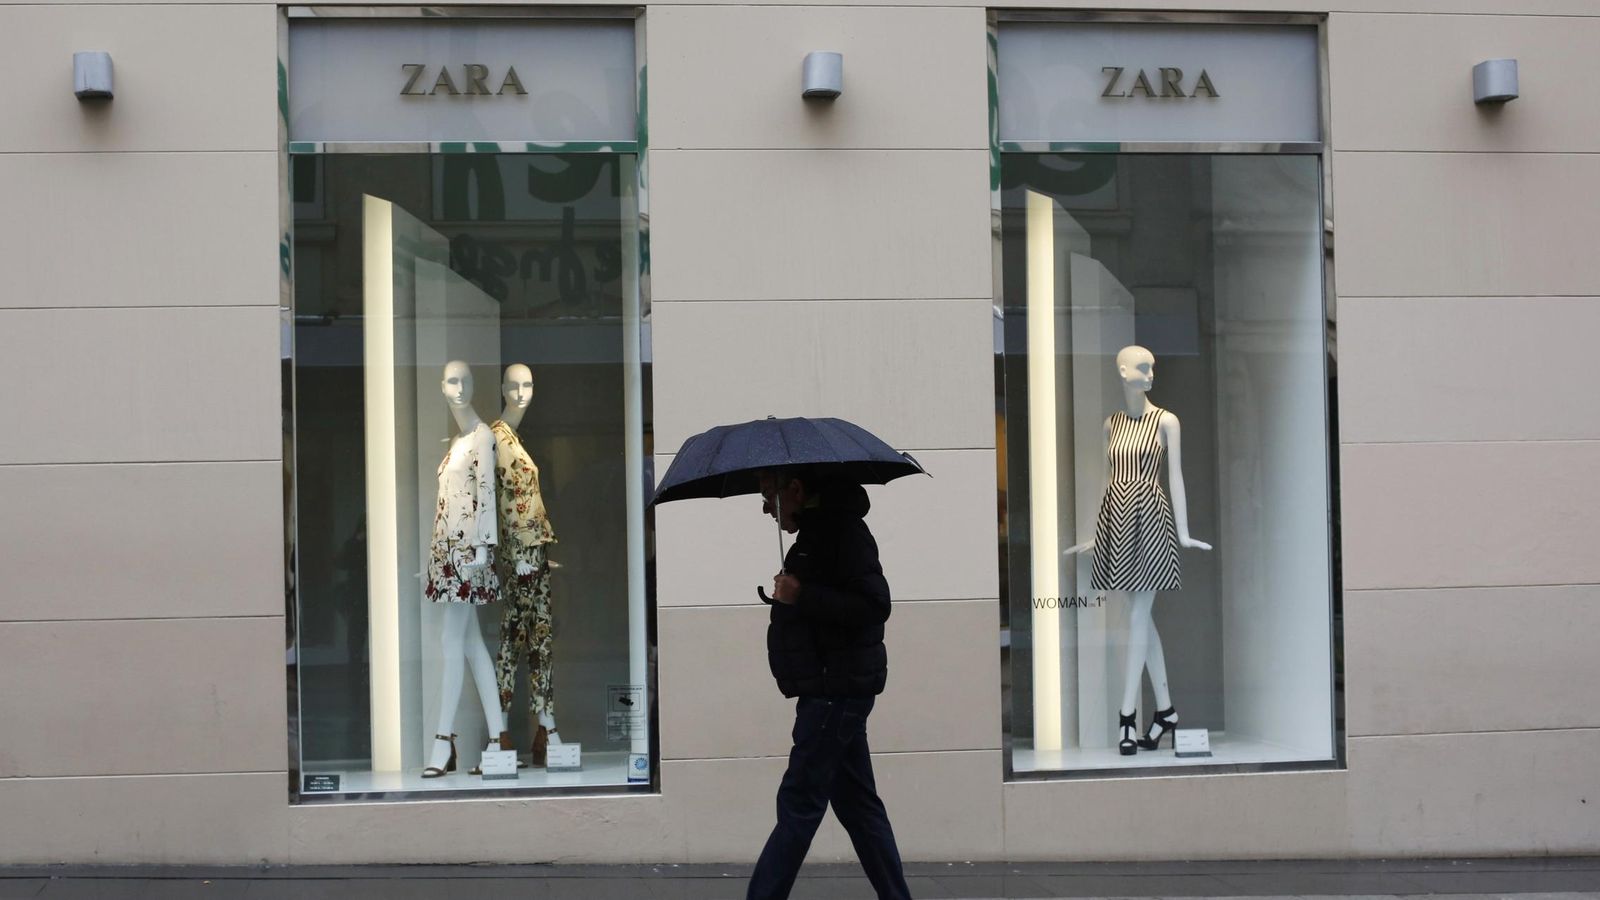 Foto: Fachada de una tienda de Zara, buque insignia de Inditex. (Reuters)